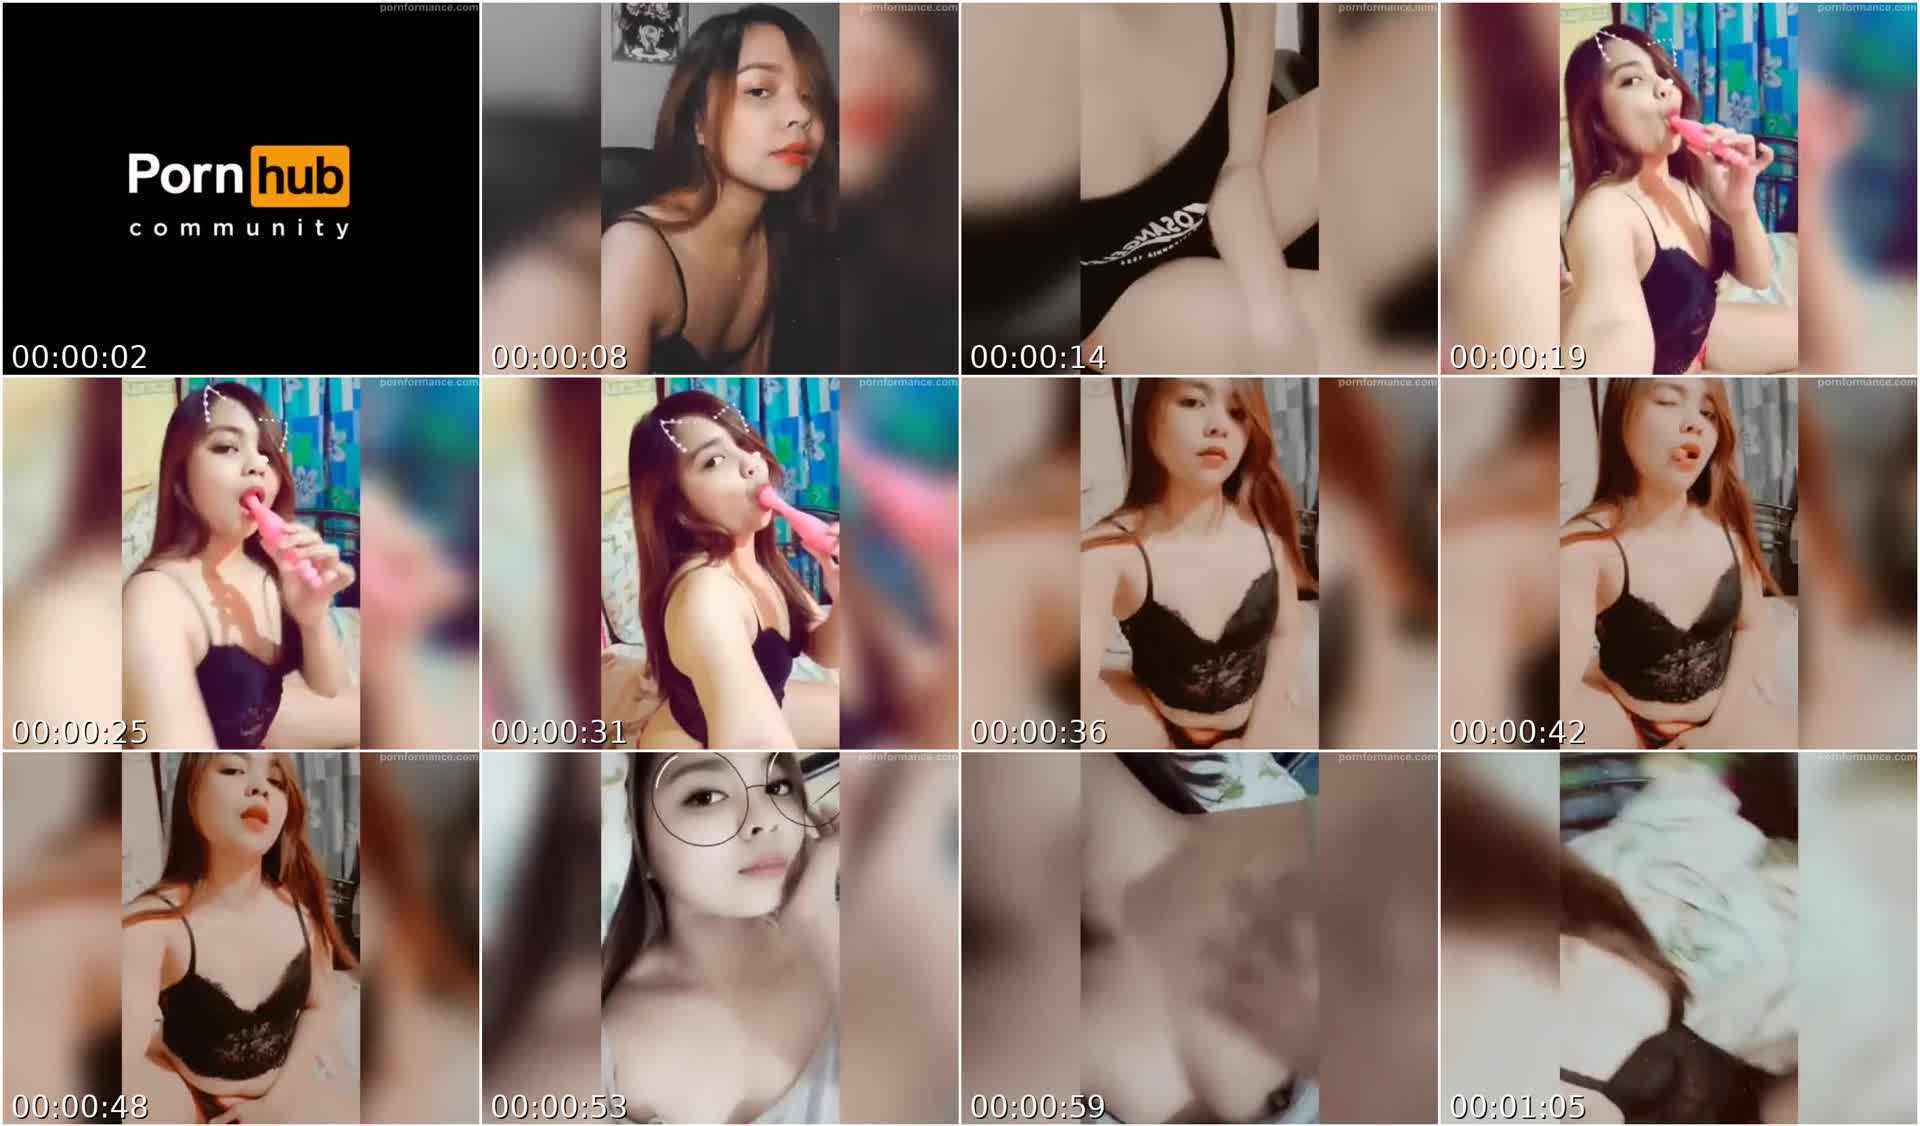 Pinay Model Sharina Shy Snapchat Vids Compilation